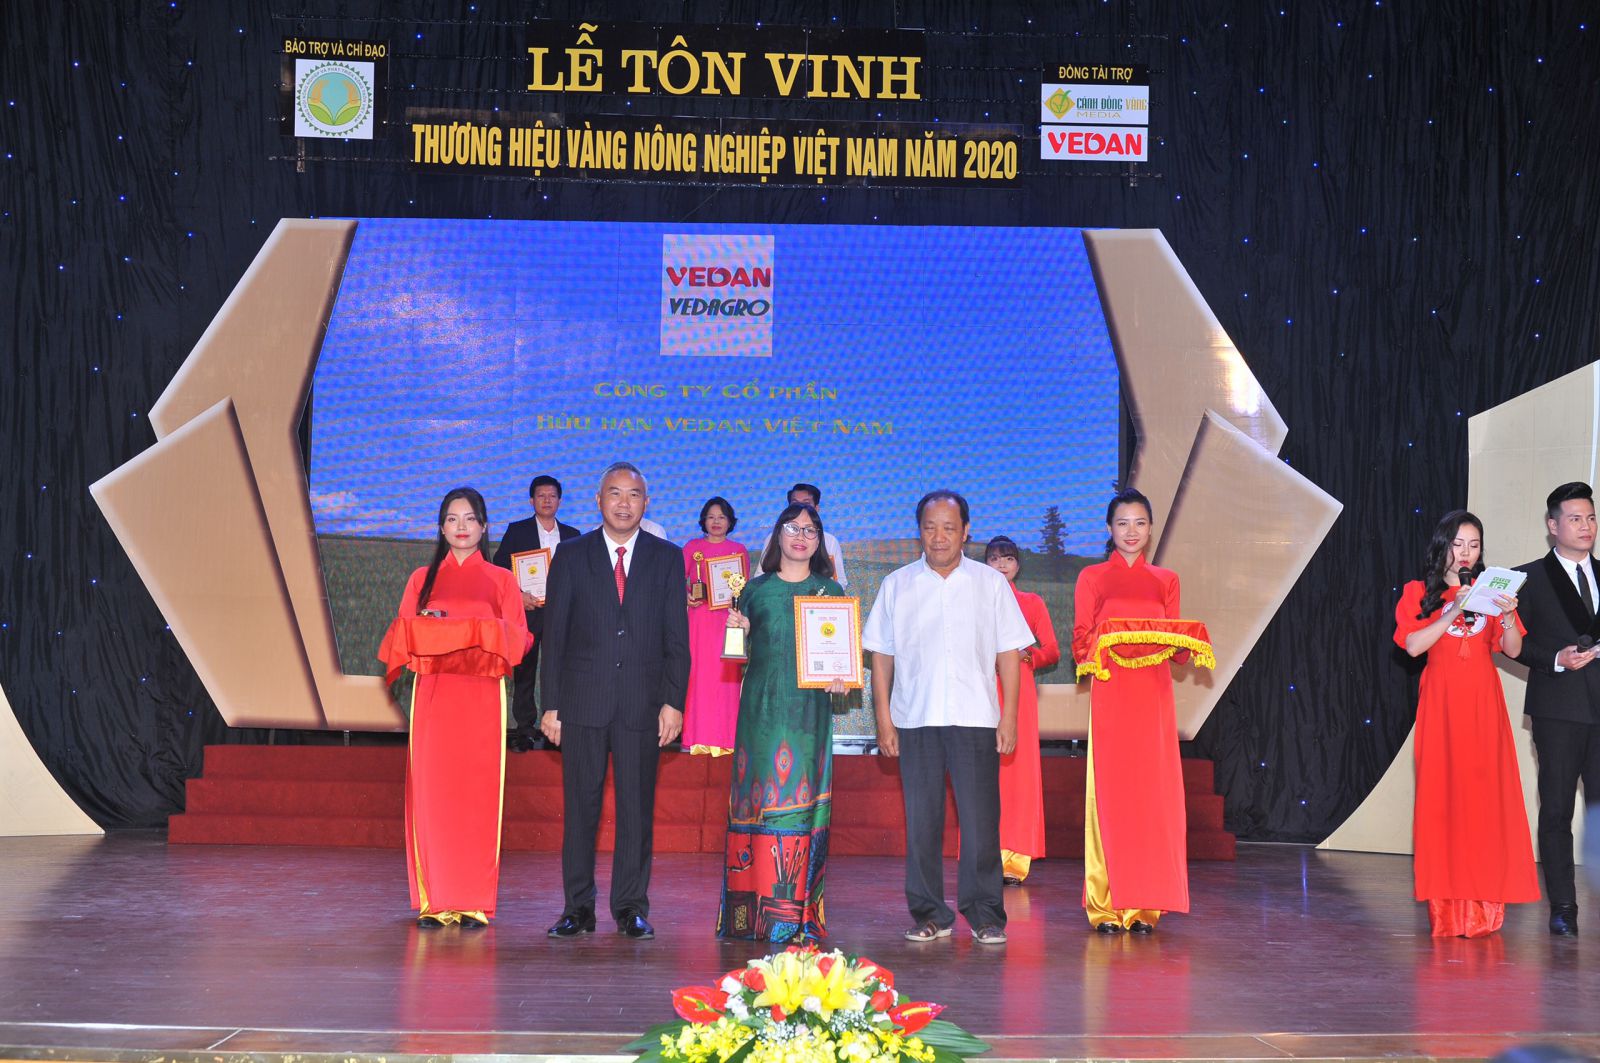 Đại diện Vedan nhận chứng nhận “Thương hiệu vàng nông nghiệp Việt Nam”p/sản phẩm phân hữu cơ khoáng Vedagro dạng viên